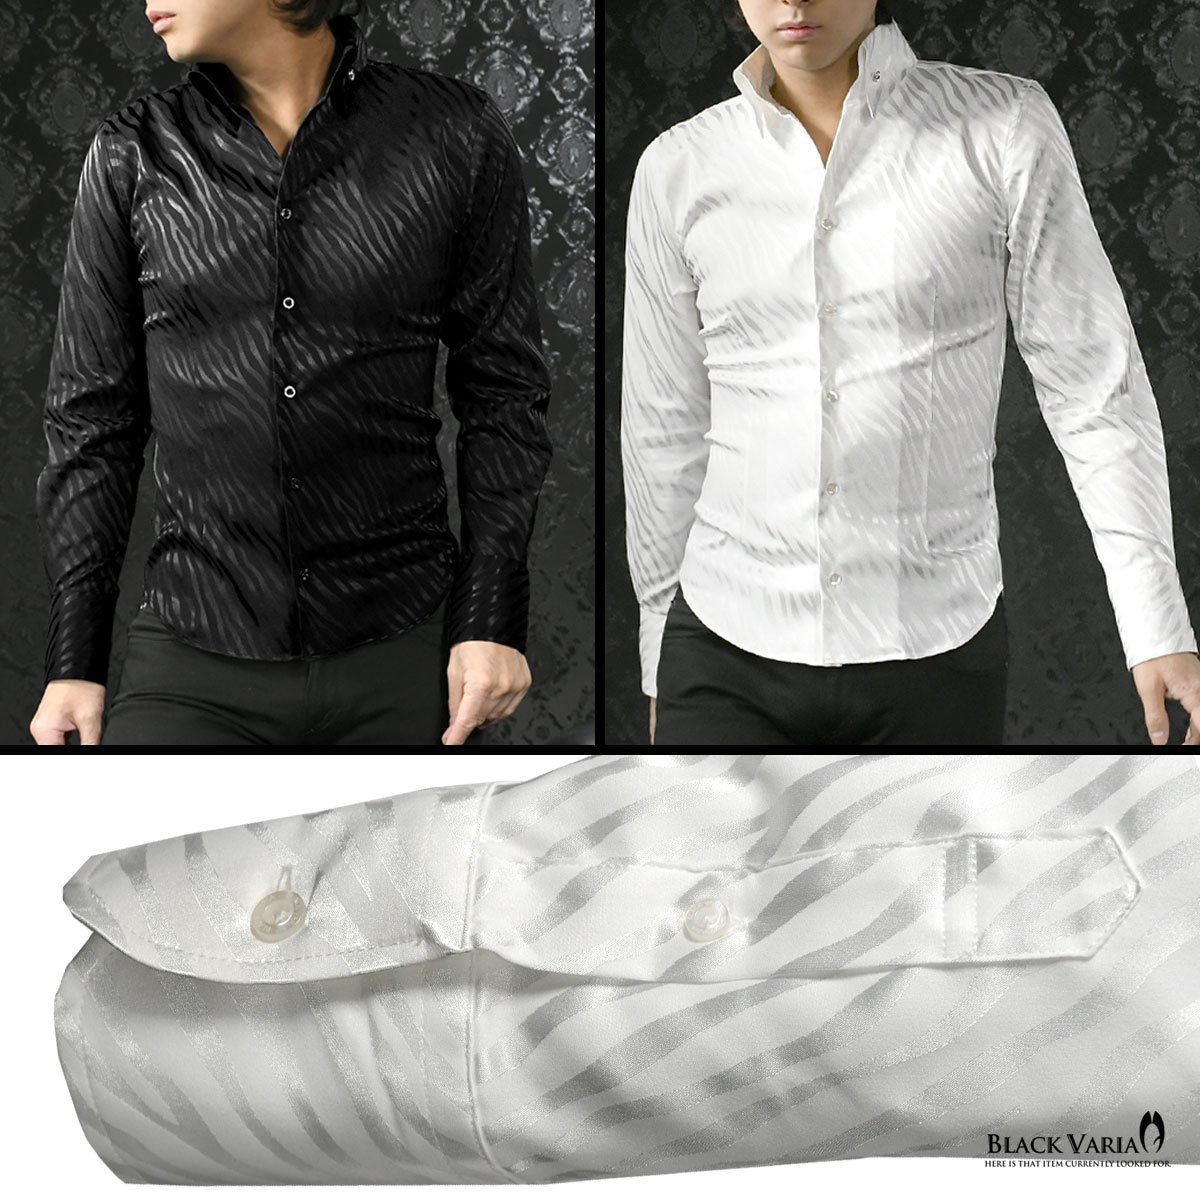 181724-wh BlackVaria サテンシャツ ドレスシャツ スキッパー ゼブラ柄 ジャガード ボタンダウン スリム メンズ(ホワイト白) XL パーティー_画像3